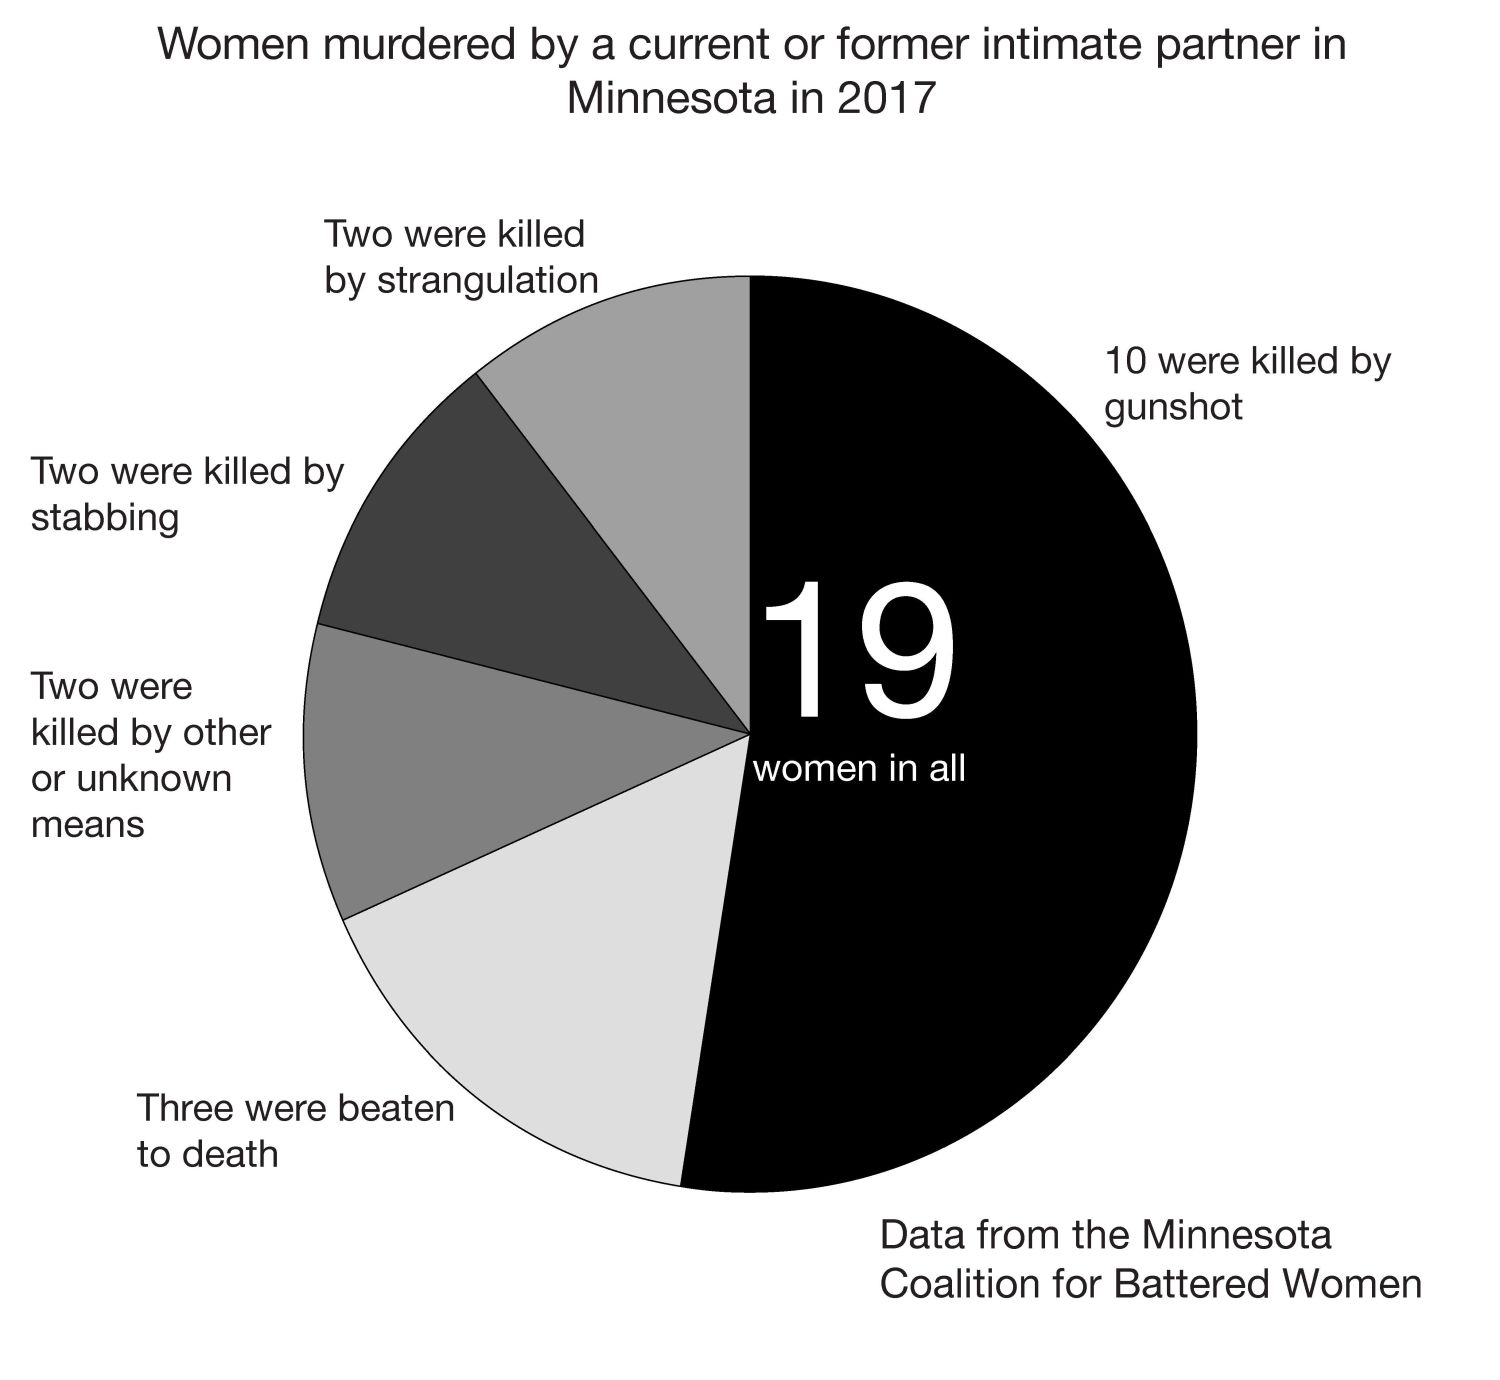 Domestic Violence Chart